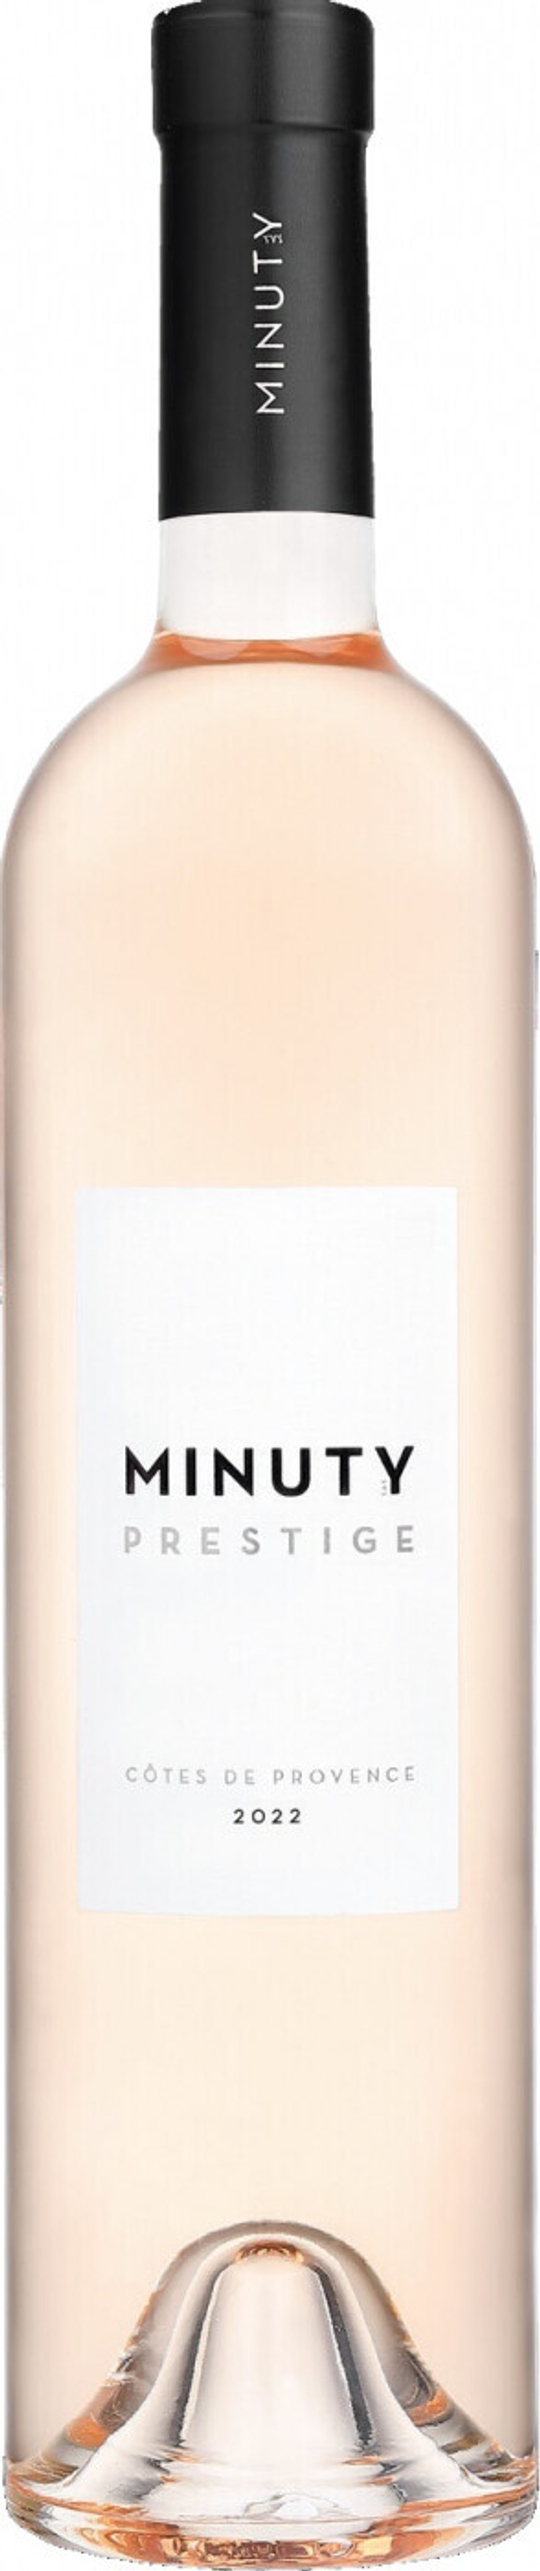 Вино Chateau Minuty Minuty Prestige Rose Cotes de Provence AOP, 0,75 л.